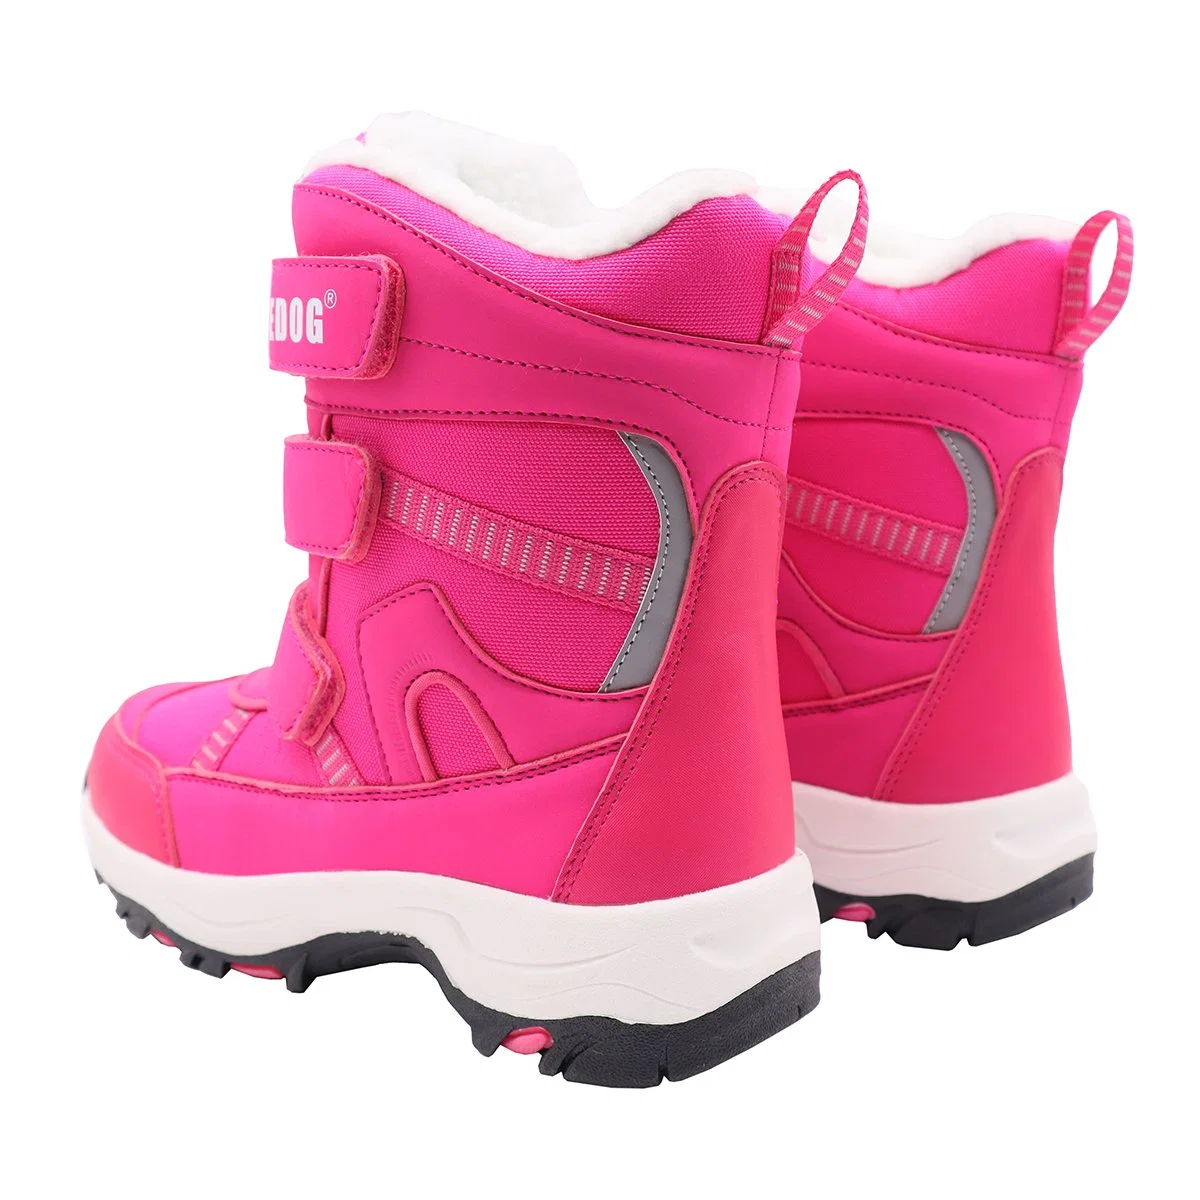 Botas de neve botas antiderrapantes impermeáveis de inverno botas Caminhadas Sapatos exteriores para Crianças